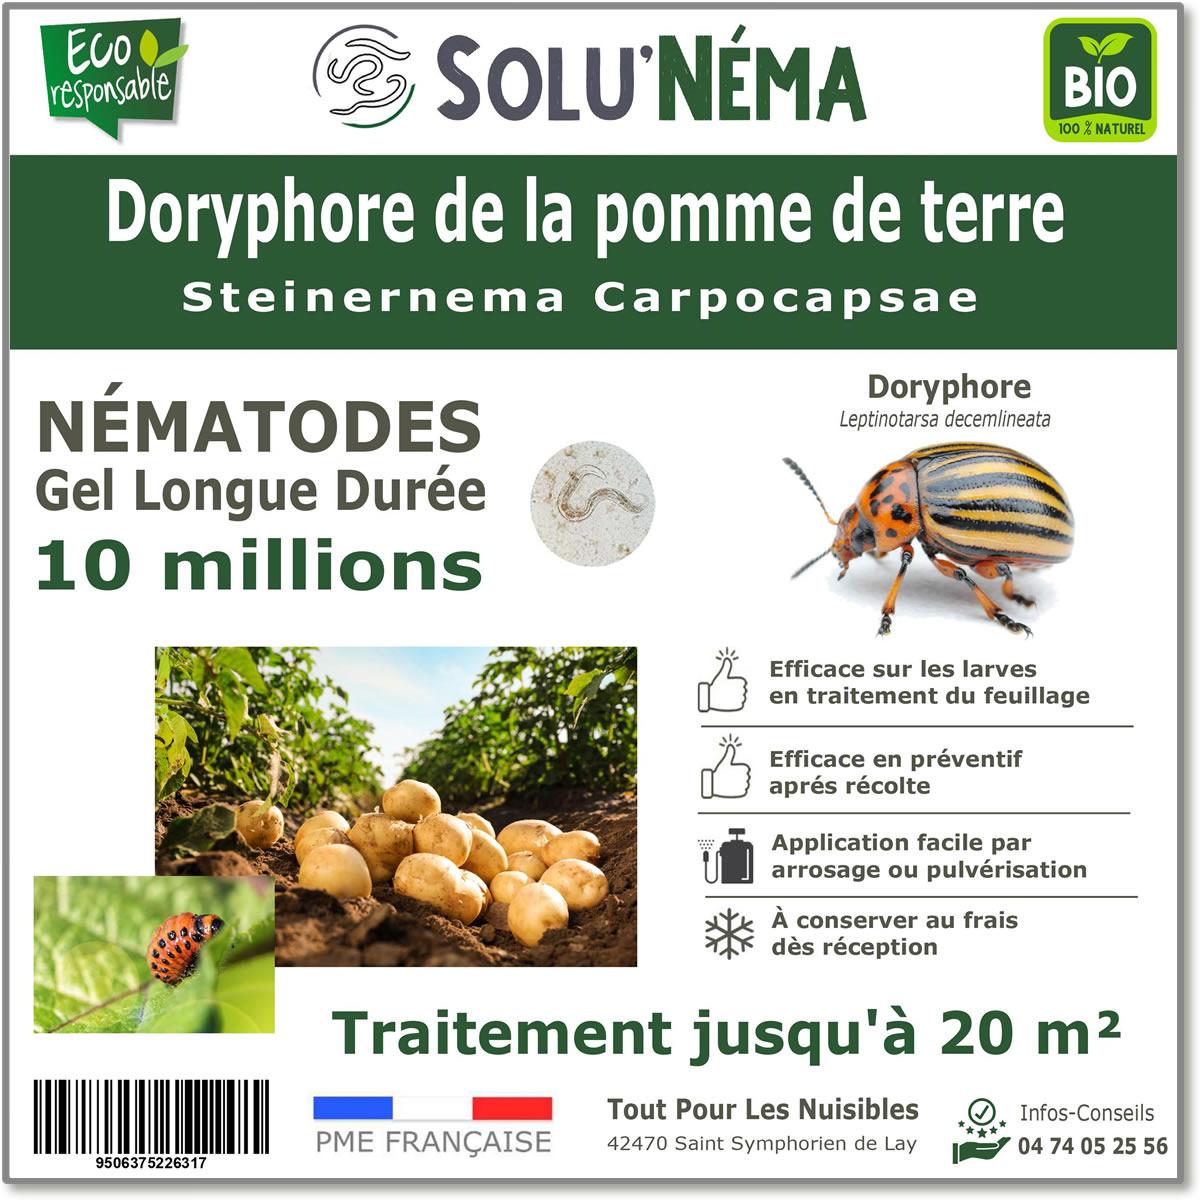 10 million nematodes to treat Colorado potato beetle larvae